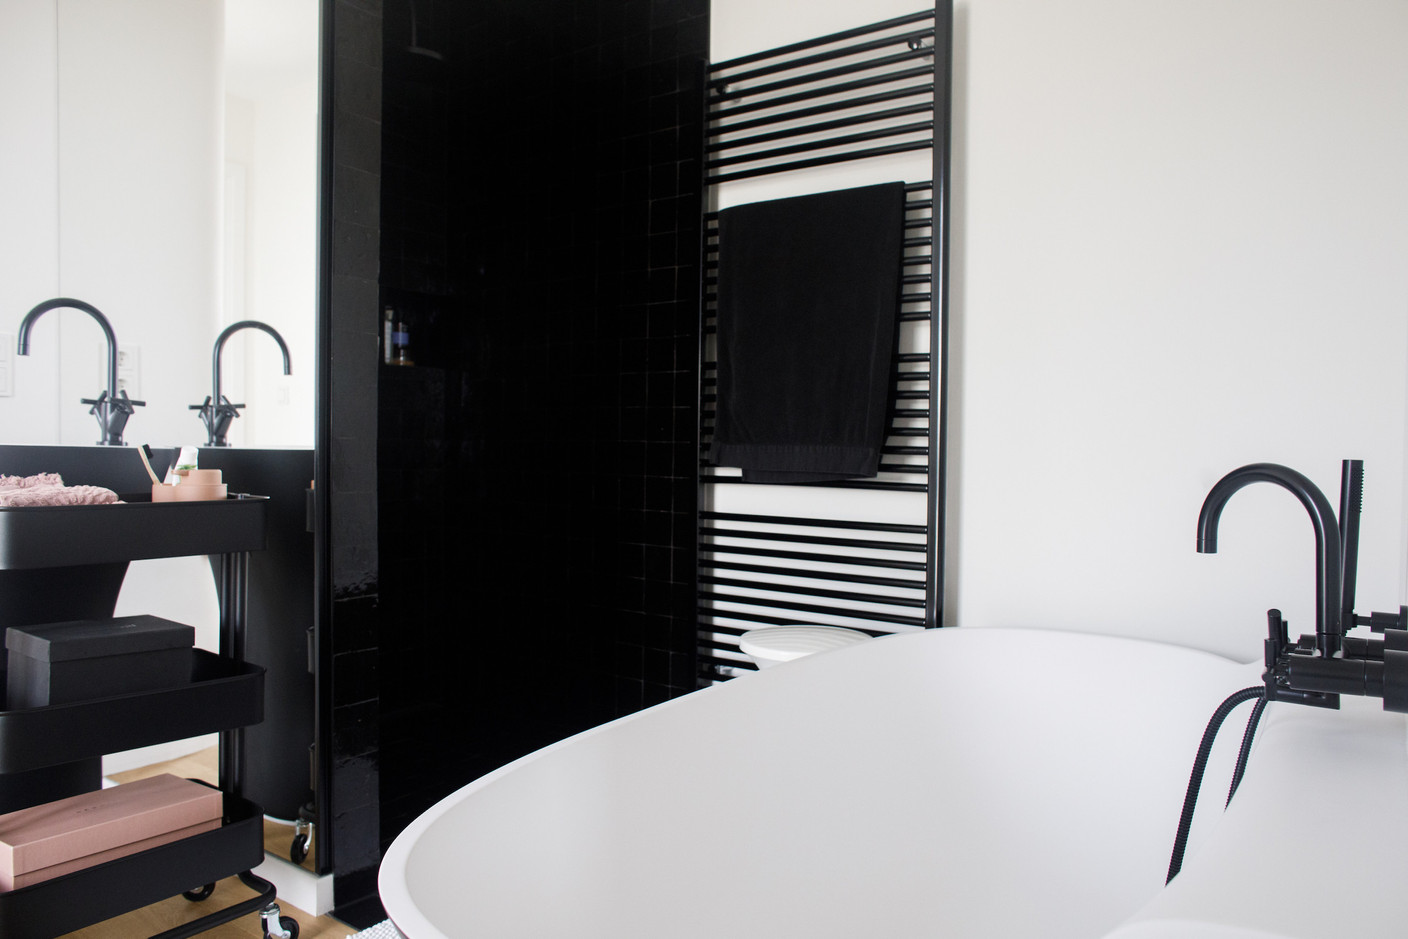 La salle de bains reprend les codes du noir et blanc, avec notamment l’utilisation de zelliges. (Photo: Matic Zorman / Maison Moderne)